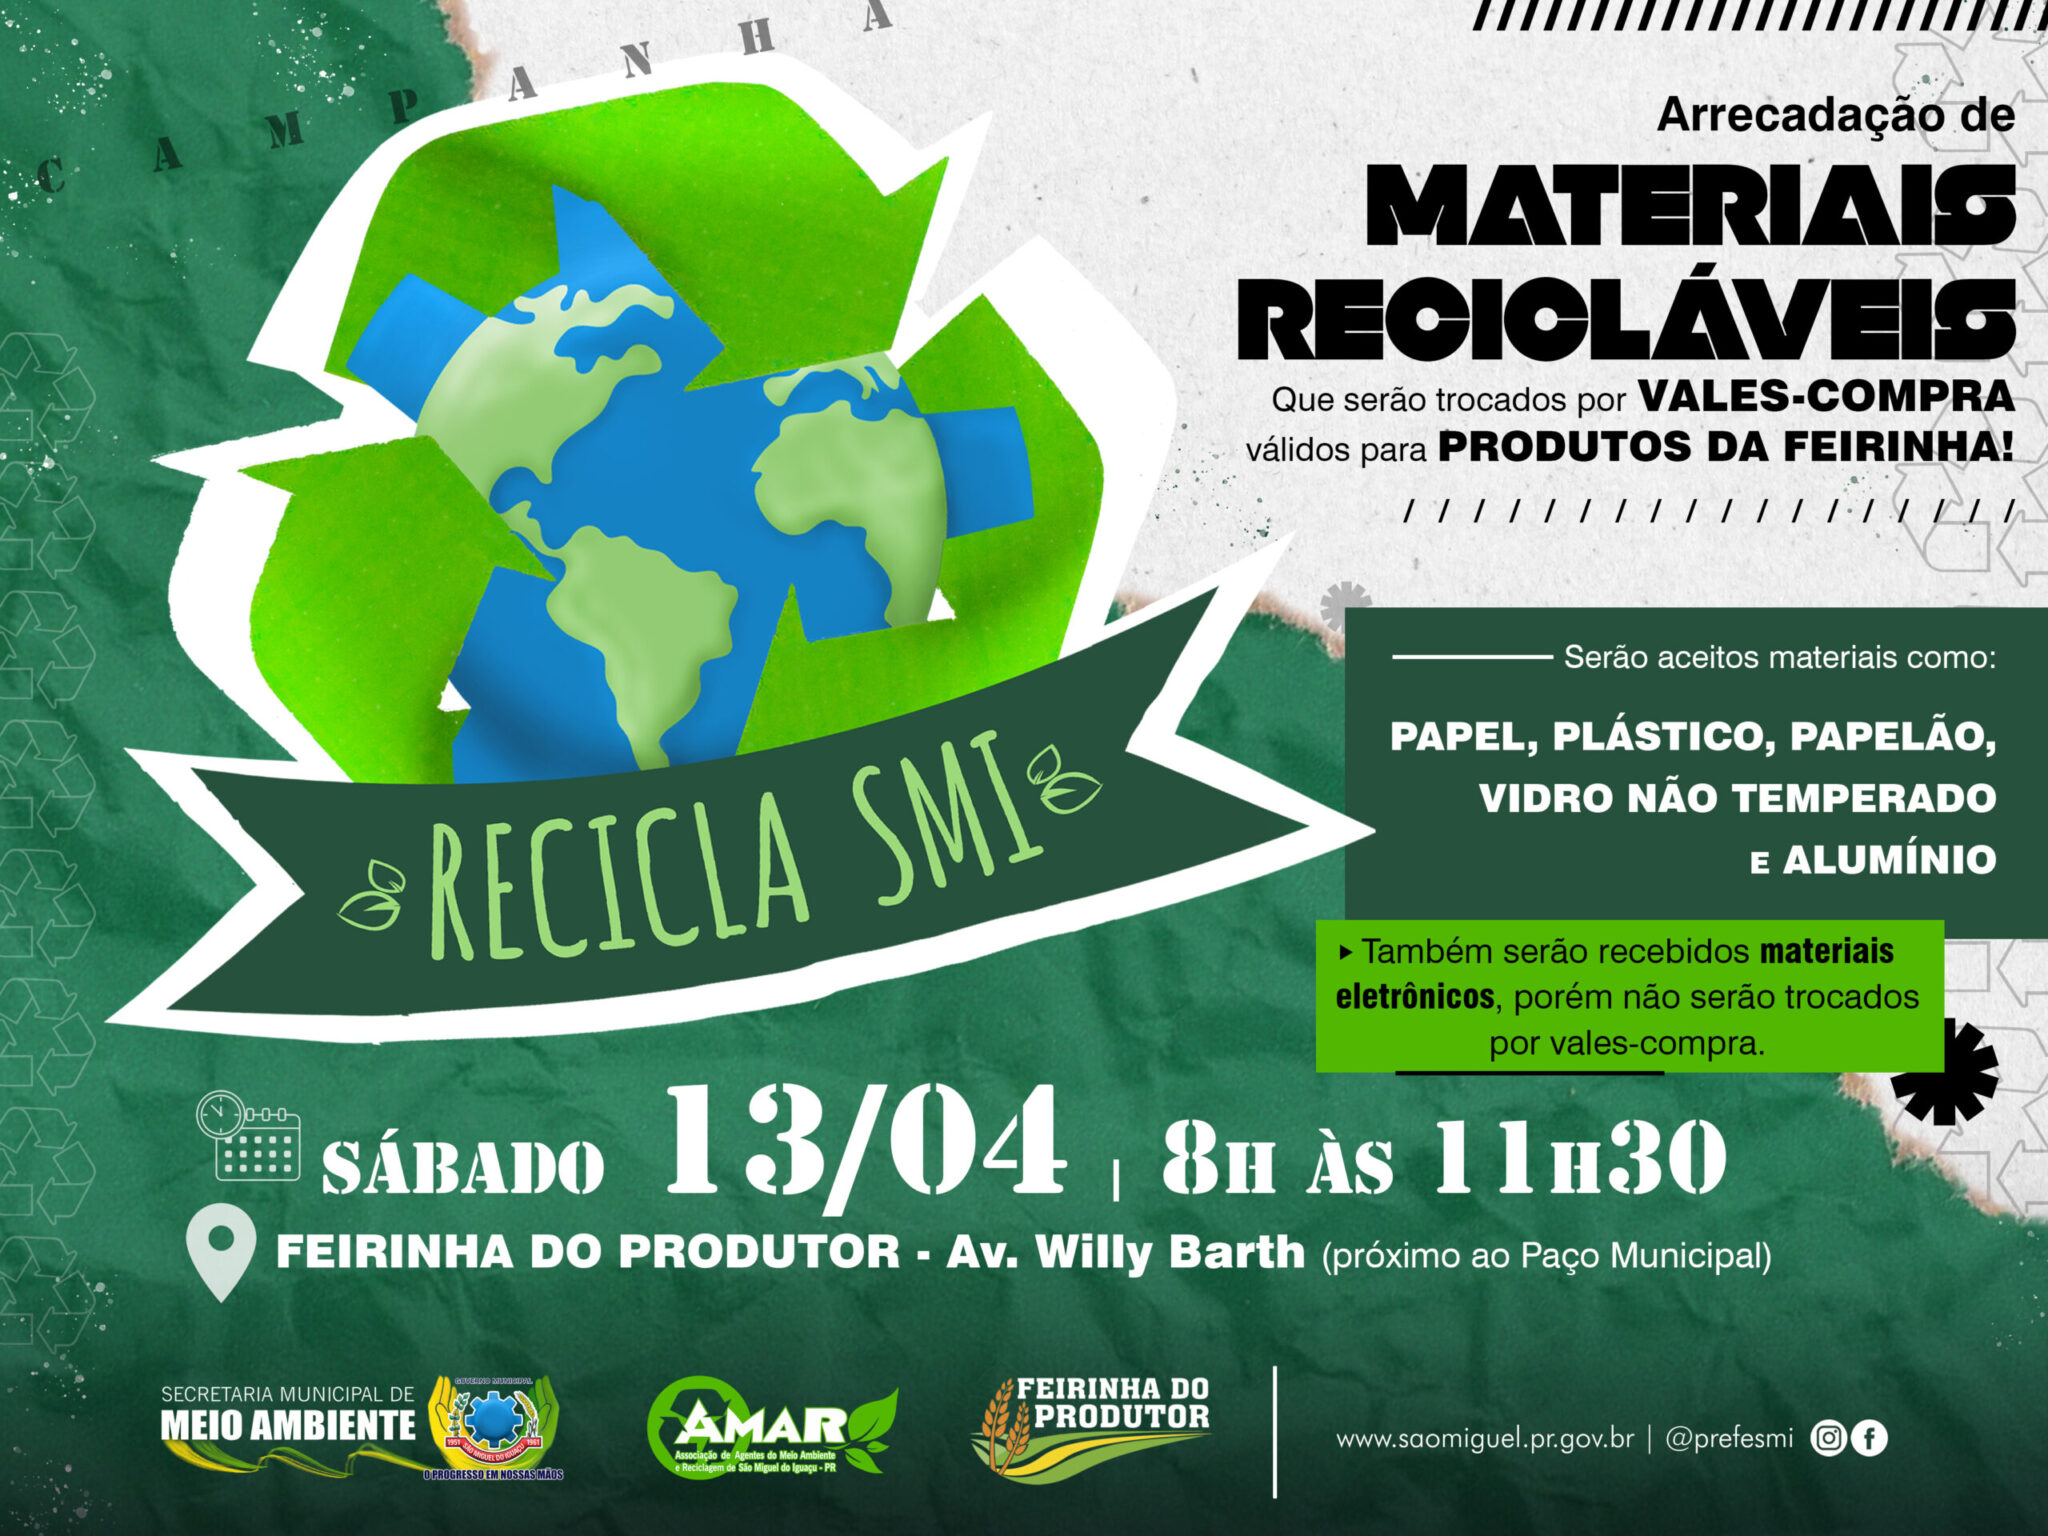 Participe da Campanha Recicla SMI em São Miguel do Iguaçu! Faça sua parte pelo meio ambiente ♻️🌍